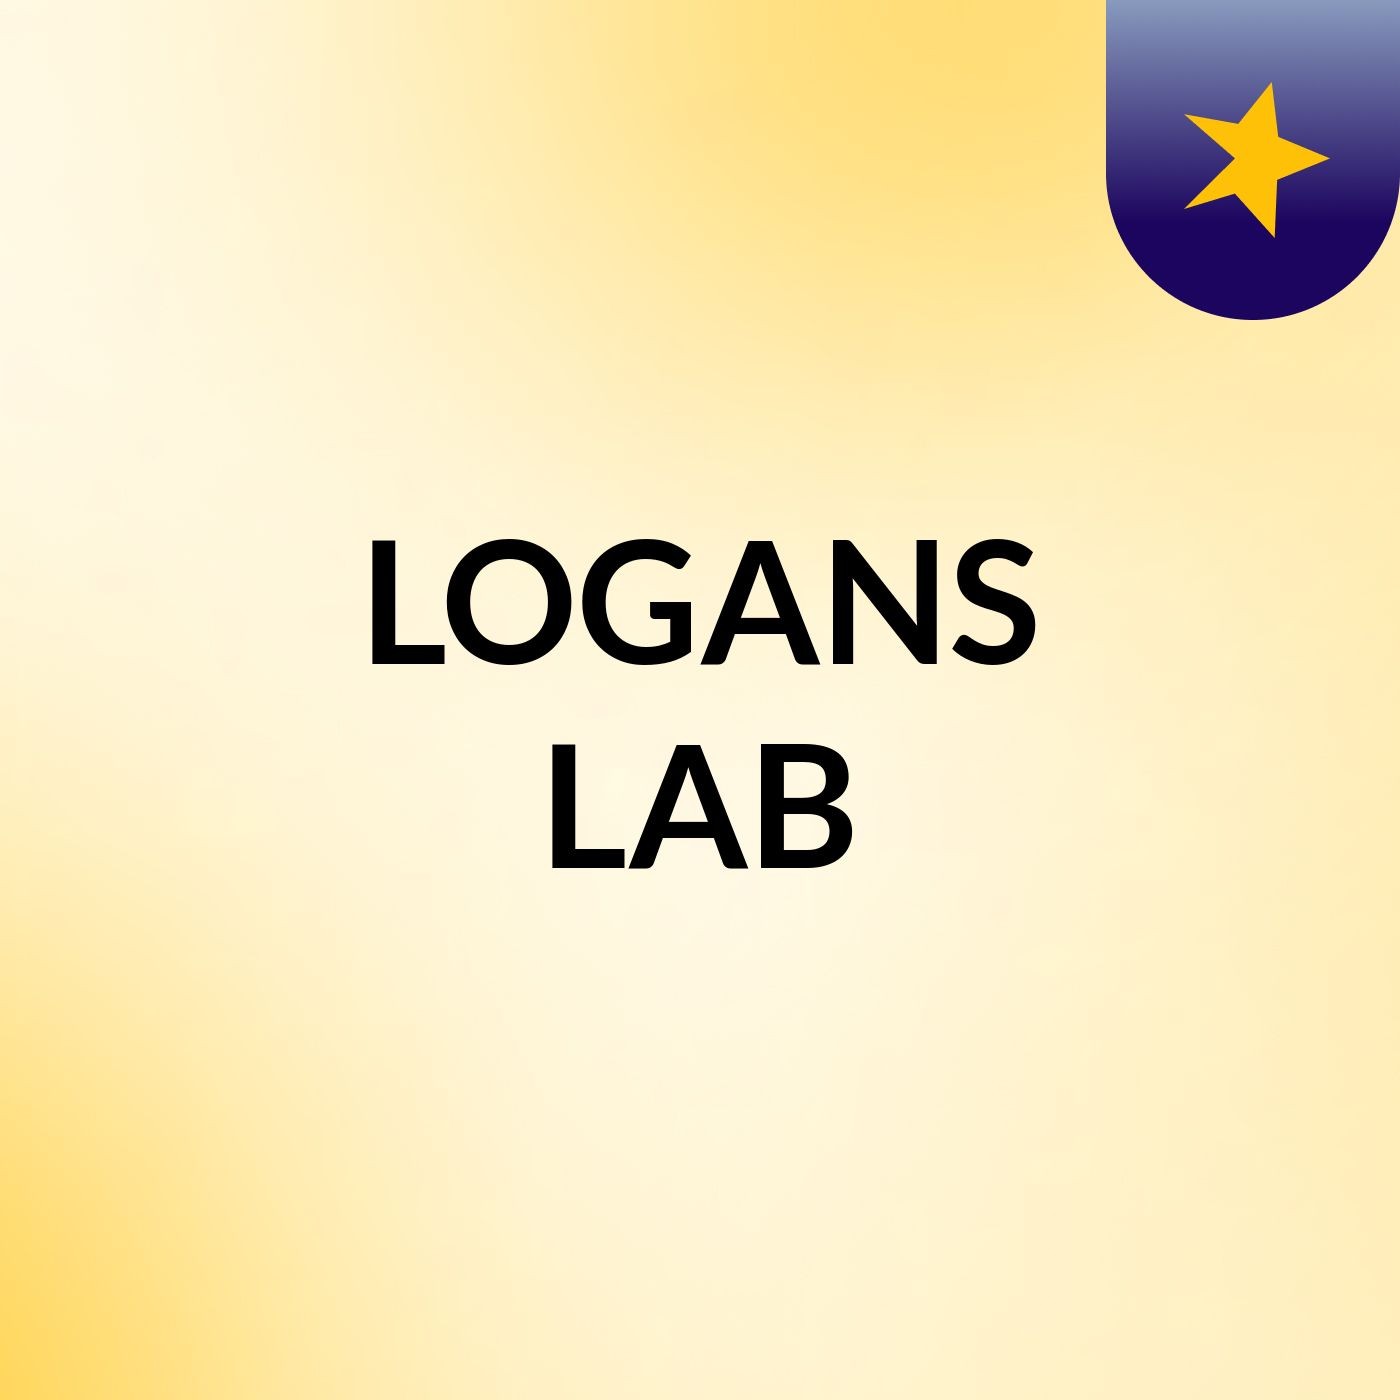 Logans lab #1 introduction